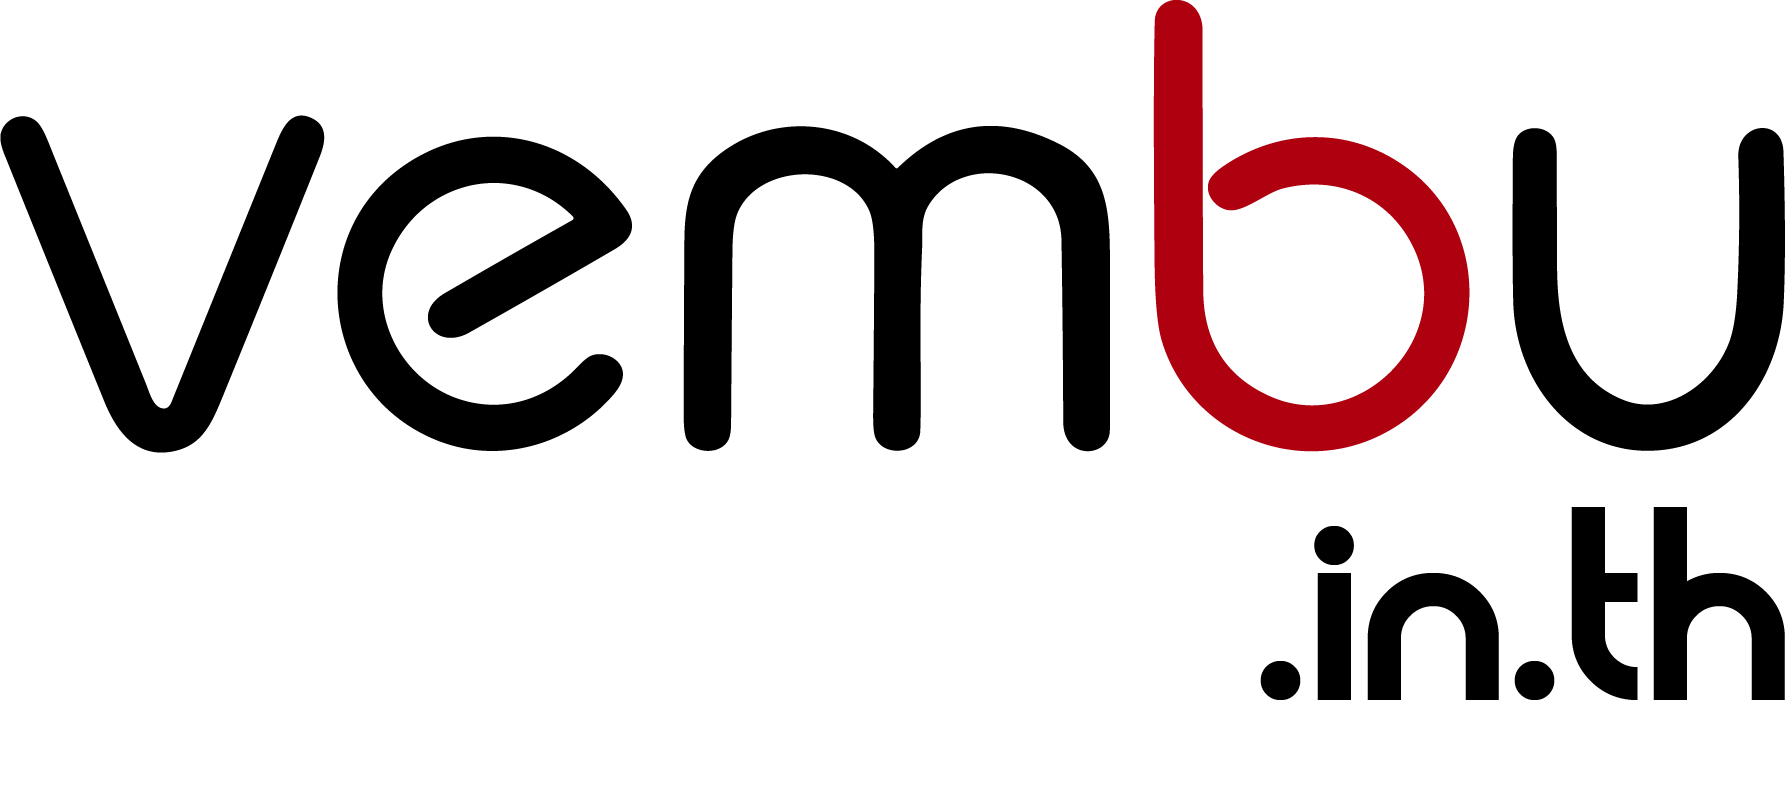 vembuth logo